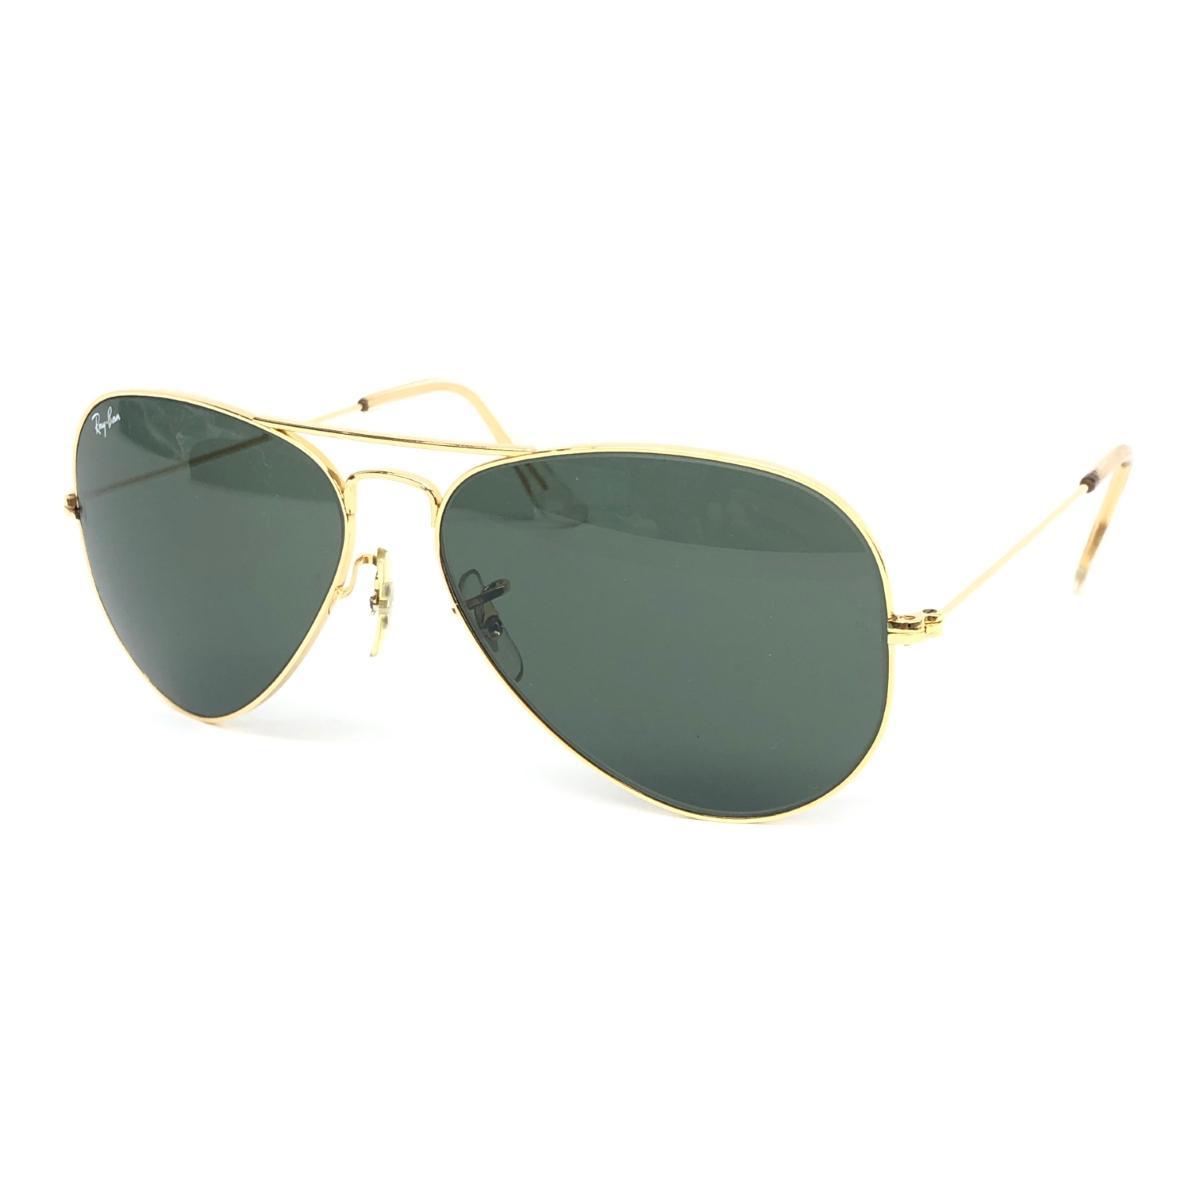 良好◆Ray-Ban レイバン アビエーター サングラス◆ ゴールドカラー メンズ メガネ 眼鏡 sunglasses 服飾小物